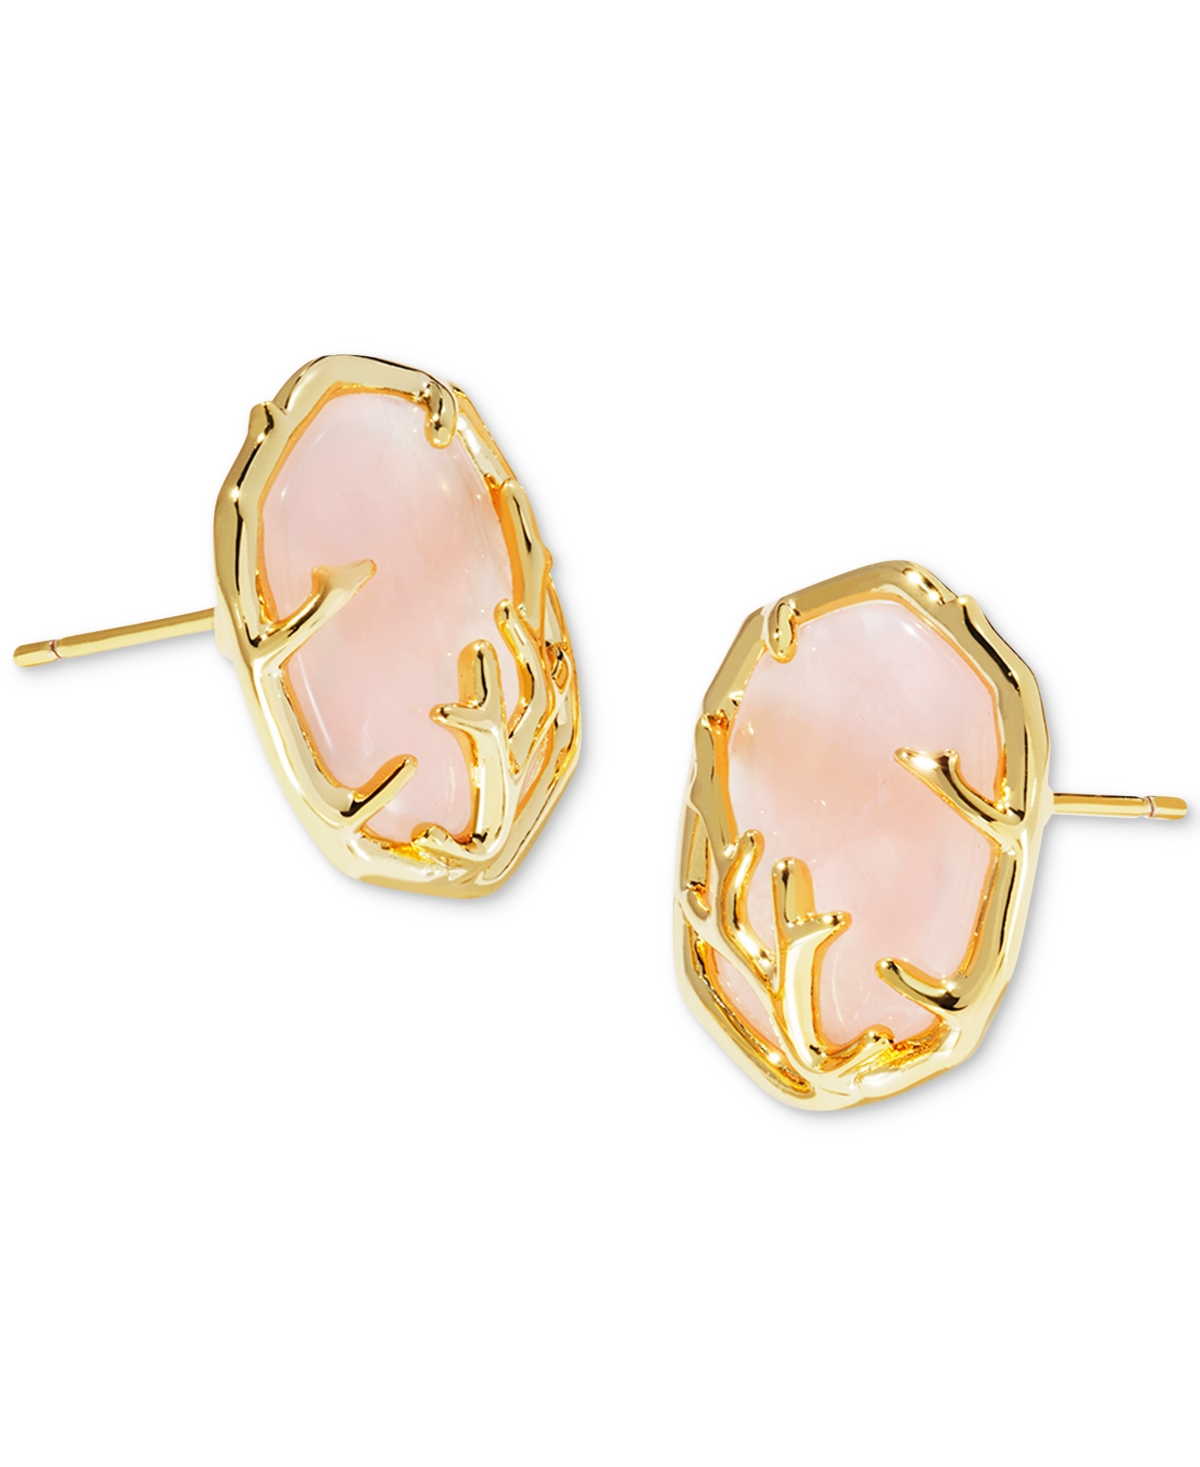 14k Gold-Plated Framed Stone Stud Earrings - Gold Irid